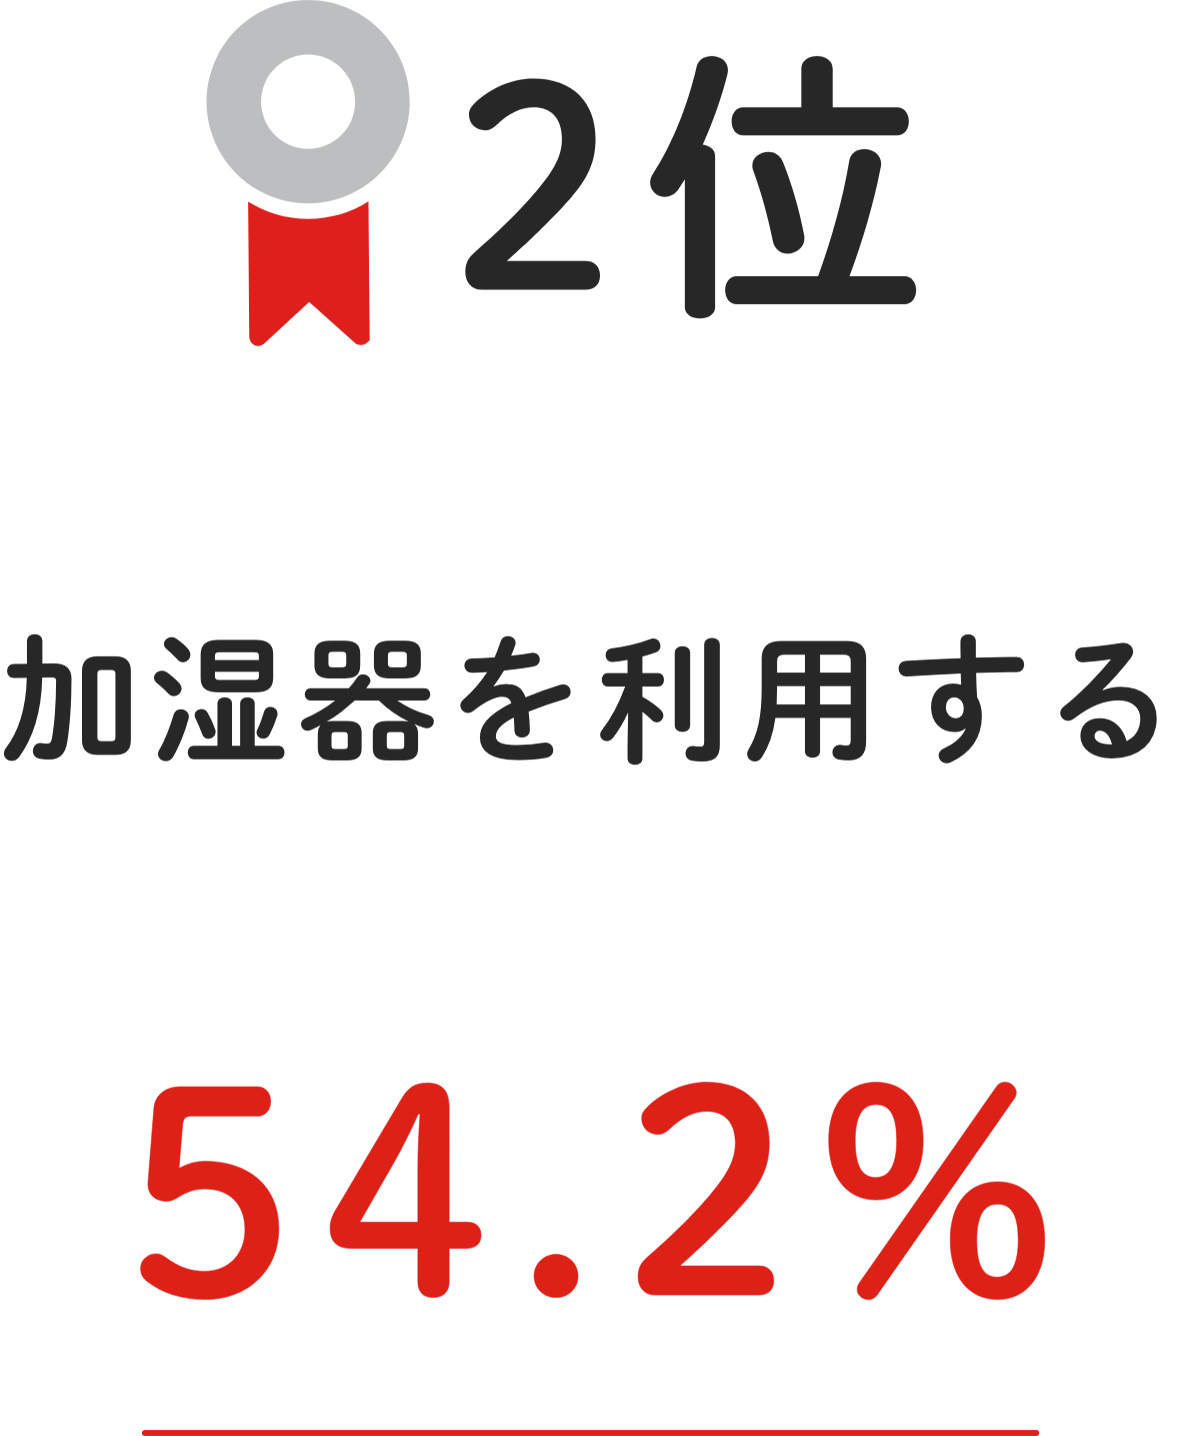 2位 加湿器を利用する 54.2%